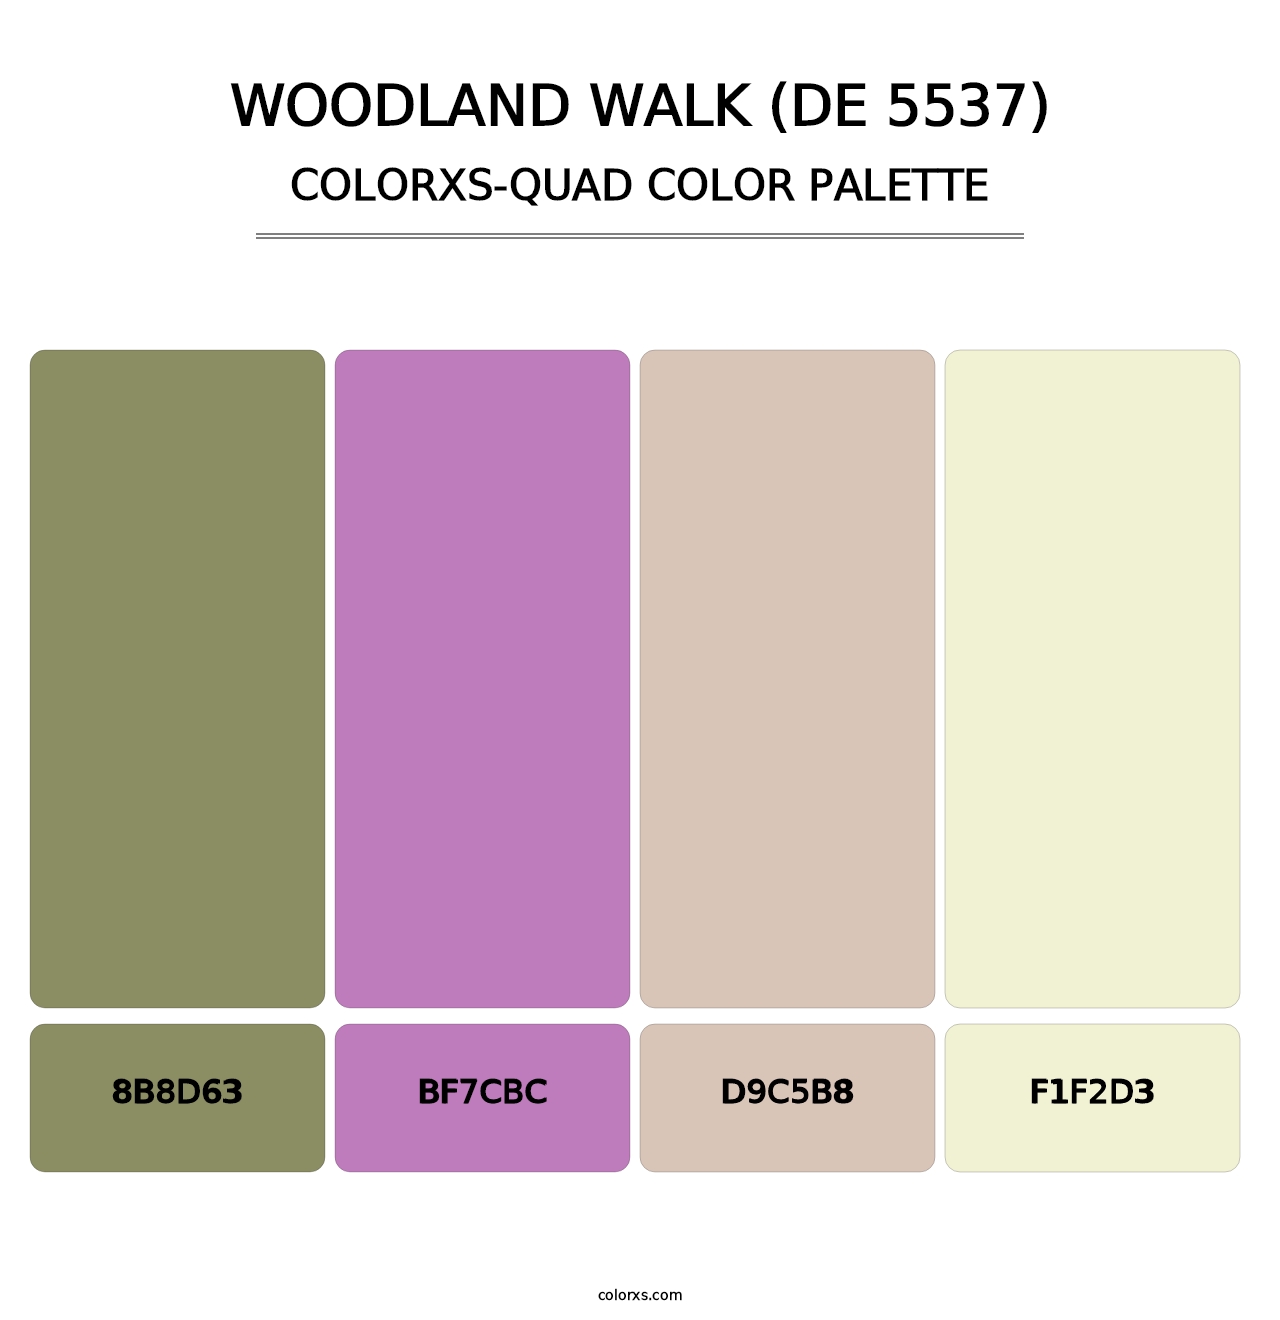 Woodland Walk (DE 5537) - Colorxs Quad Palette